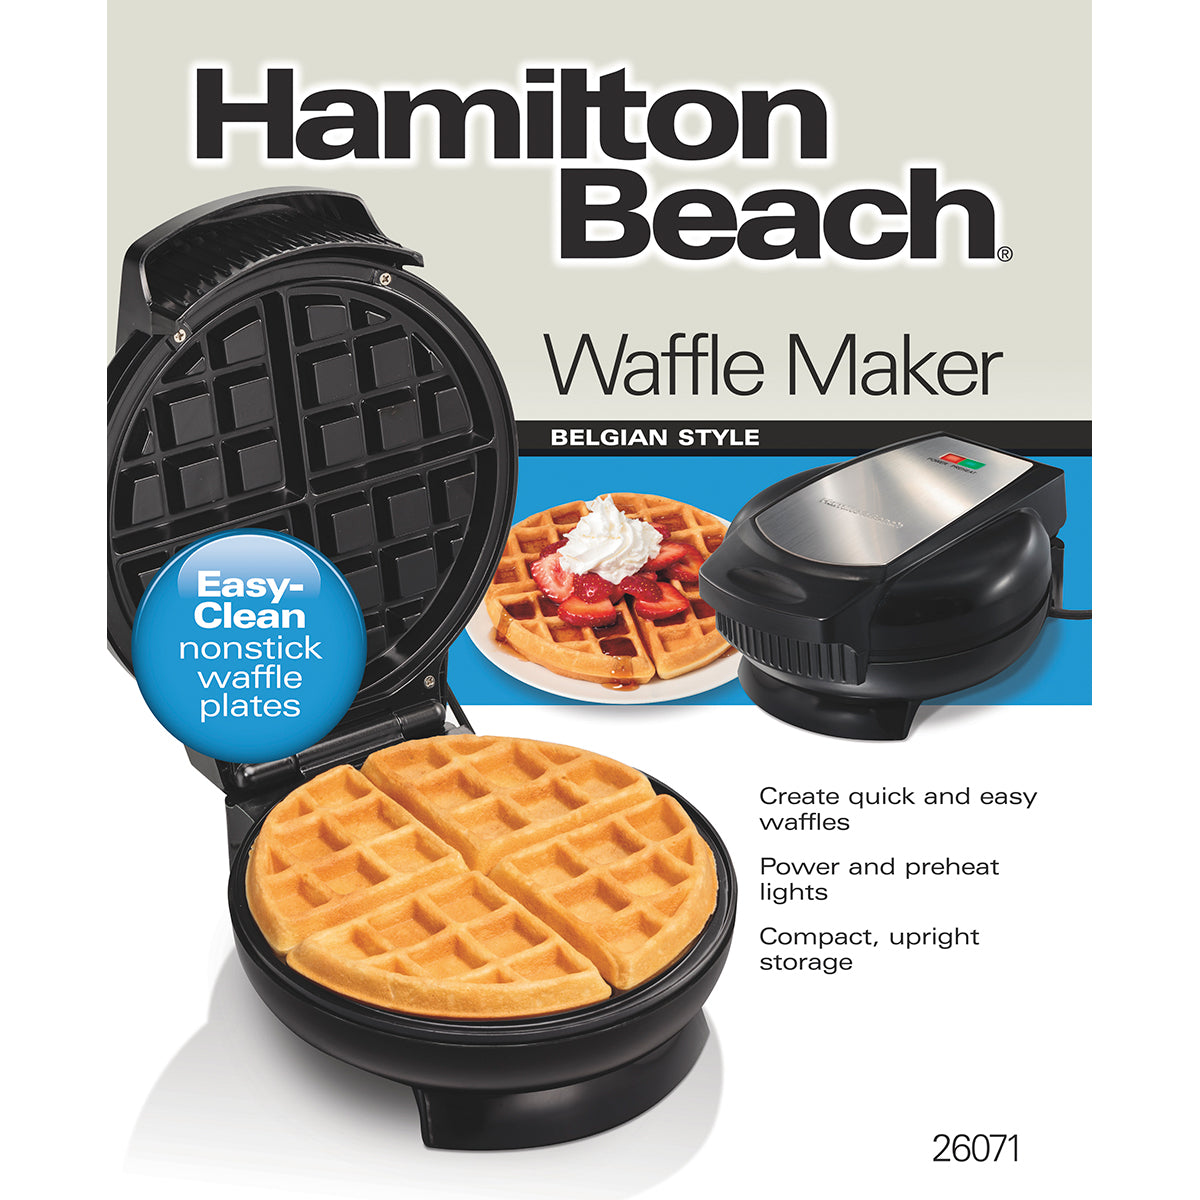 Waflera Hamilton Beach Maquina para hacer wafles crepes pancakes